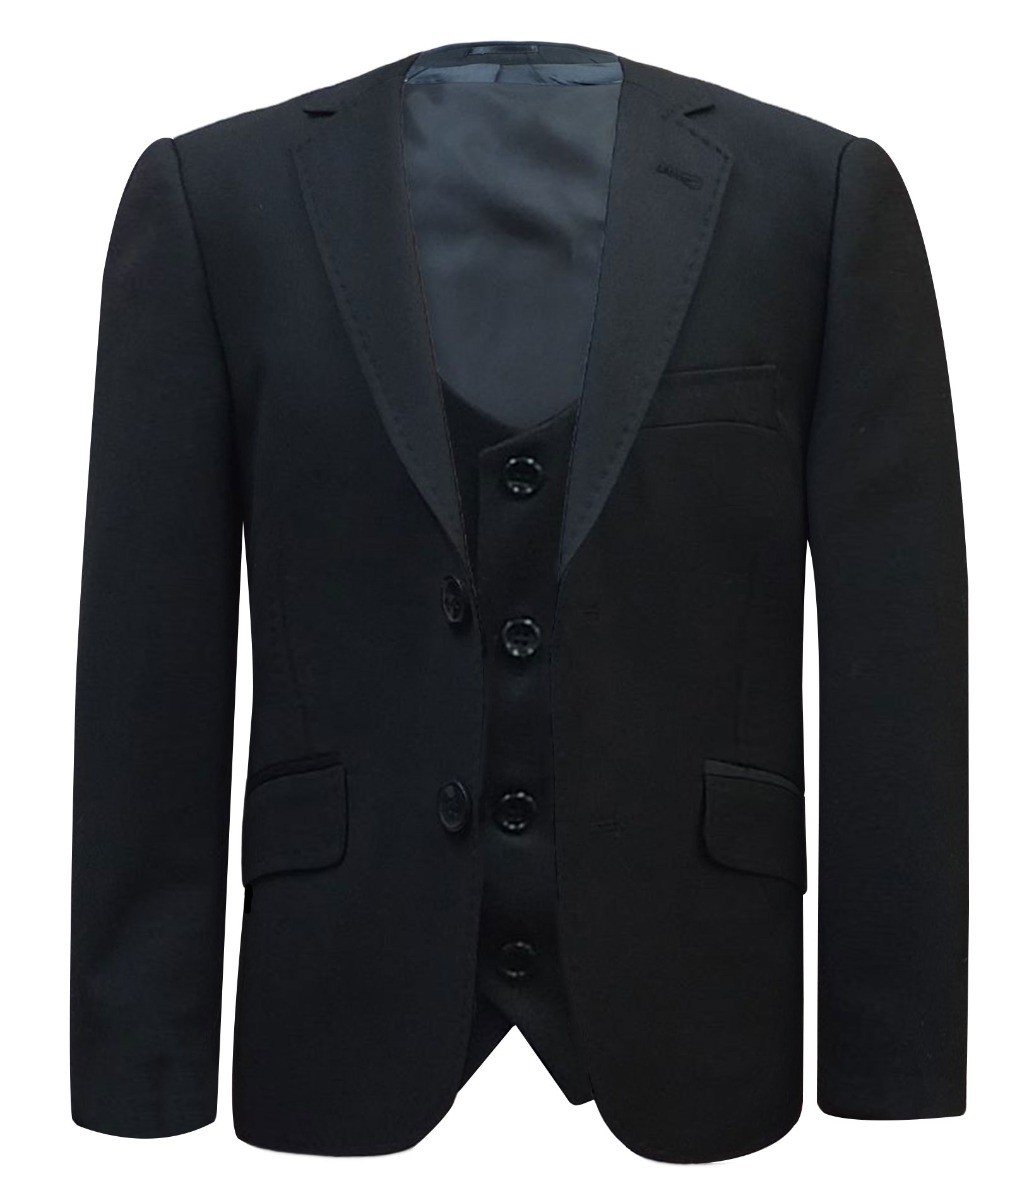 Boys Formal Suit Set - Black